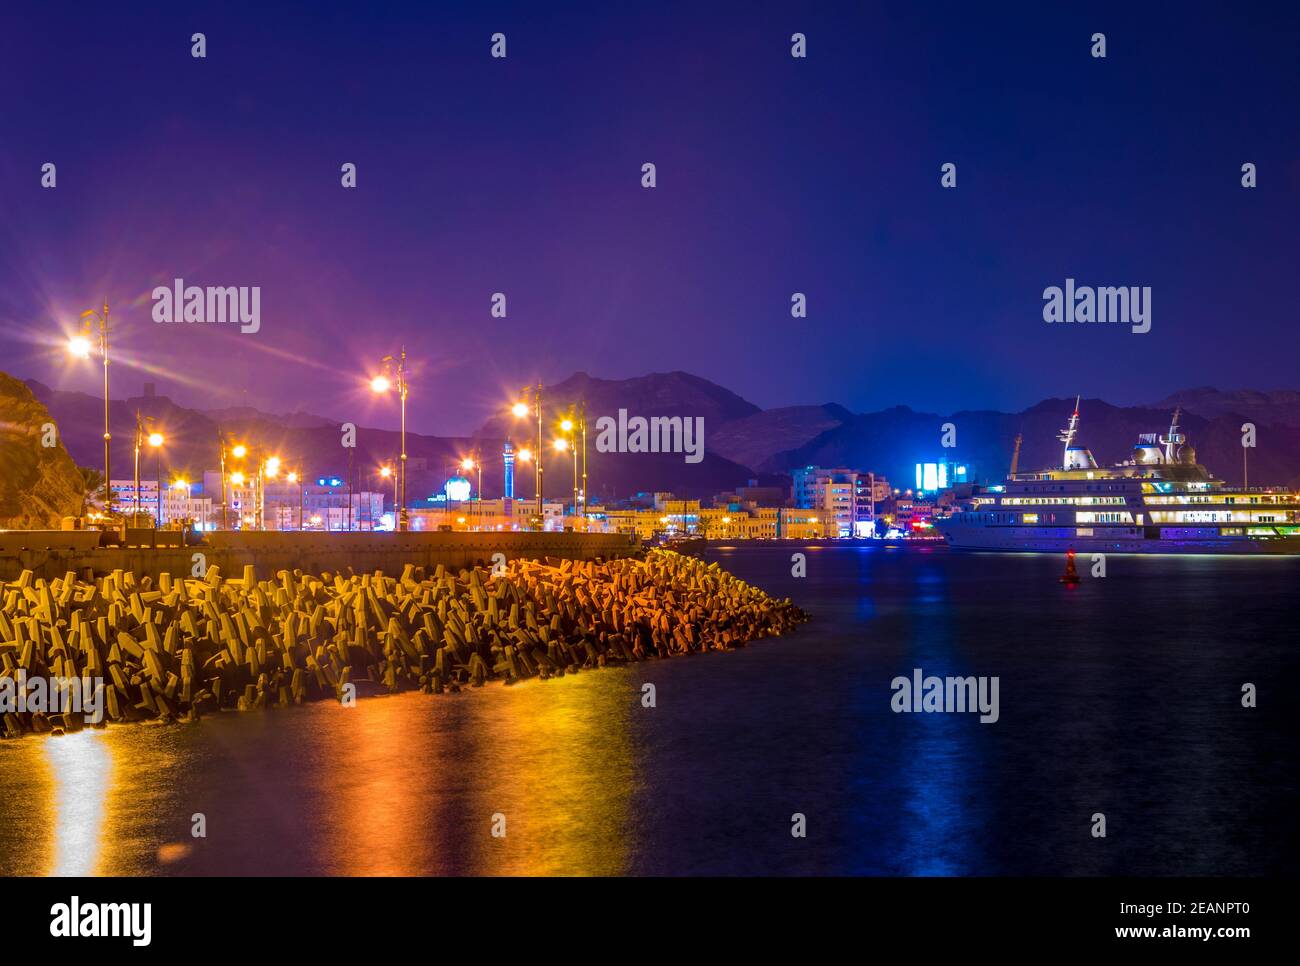 Vue sur le quartier de Muttrah à Muscat, Oman pendant la nuit. Banque D'Images